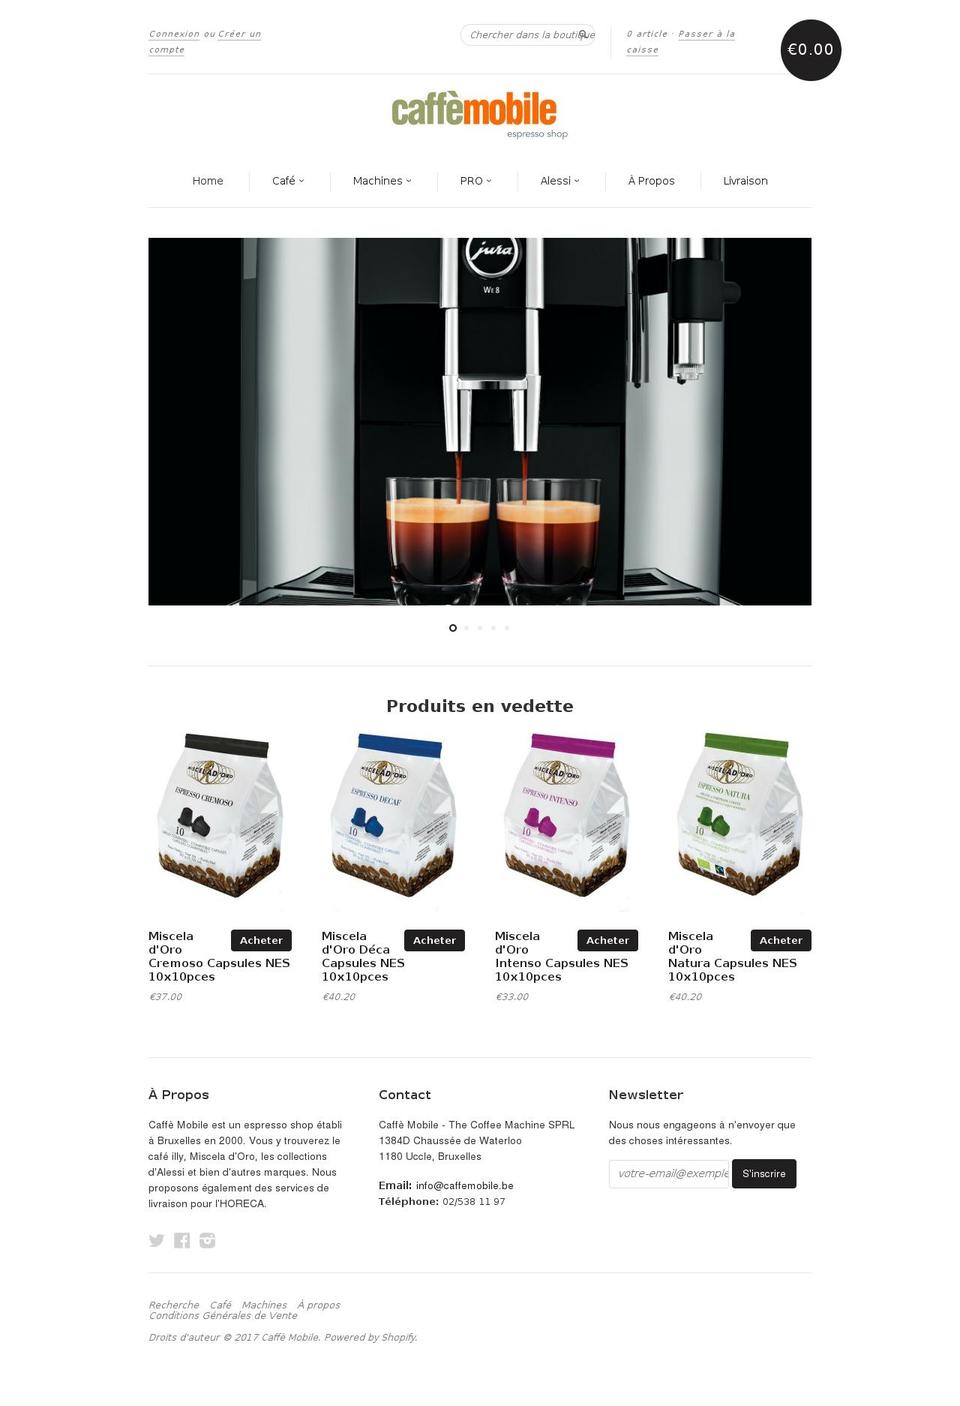 caffemobile.be shopify website screenshot